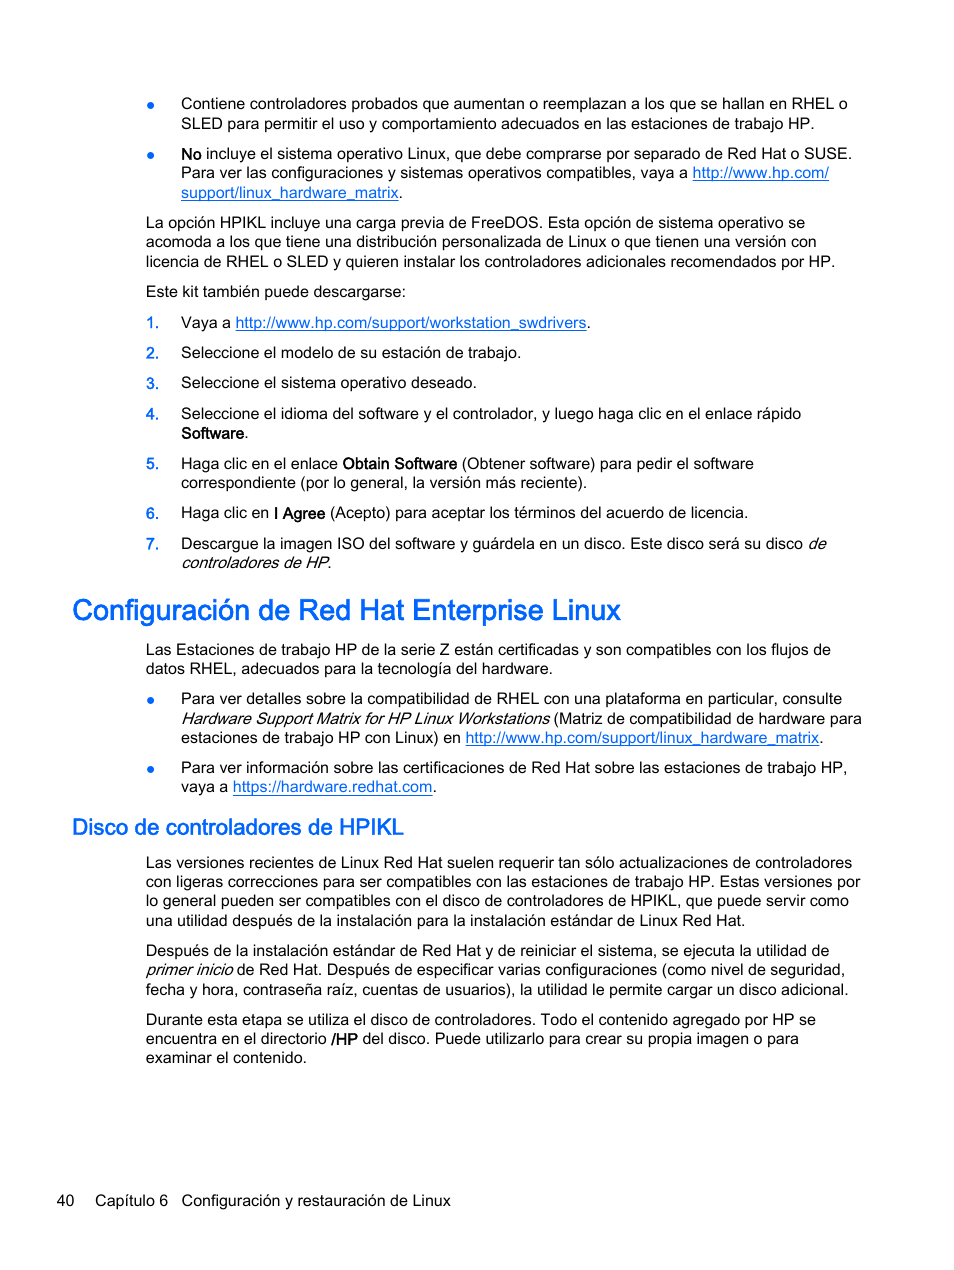 Configuración de red hat enterprise linux, Disco de controladores de hpikl | HP Estación de trabajo HP Z820 Manual del usuario | Página 48 / 61